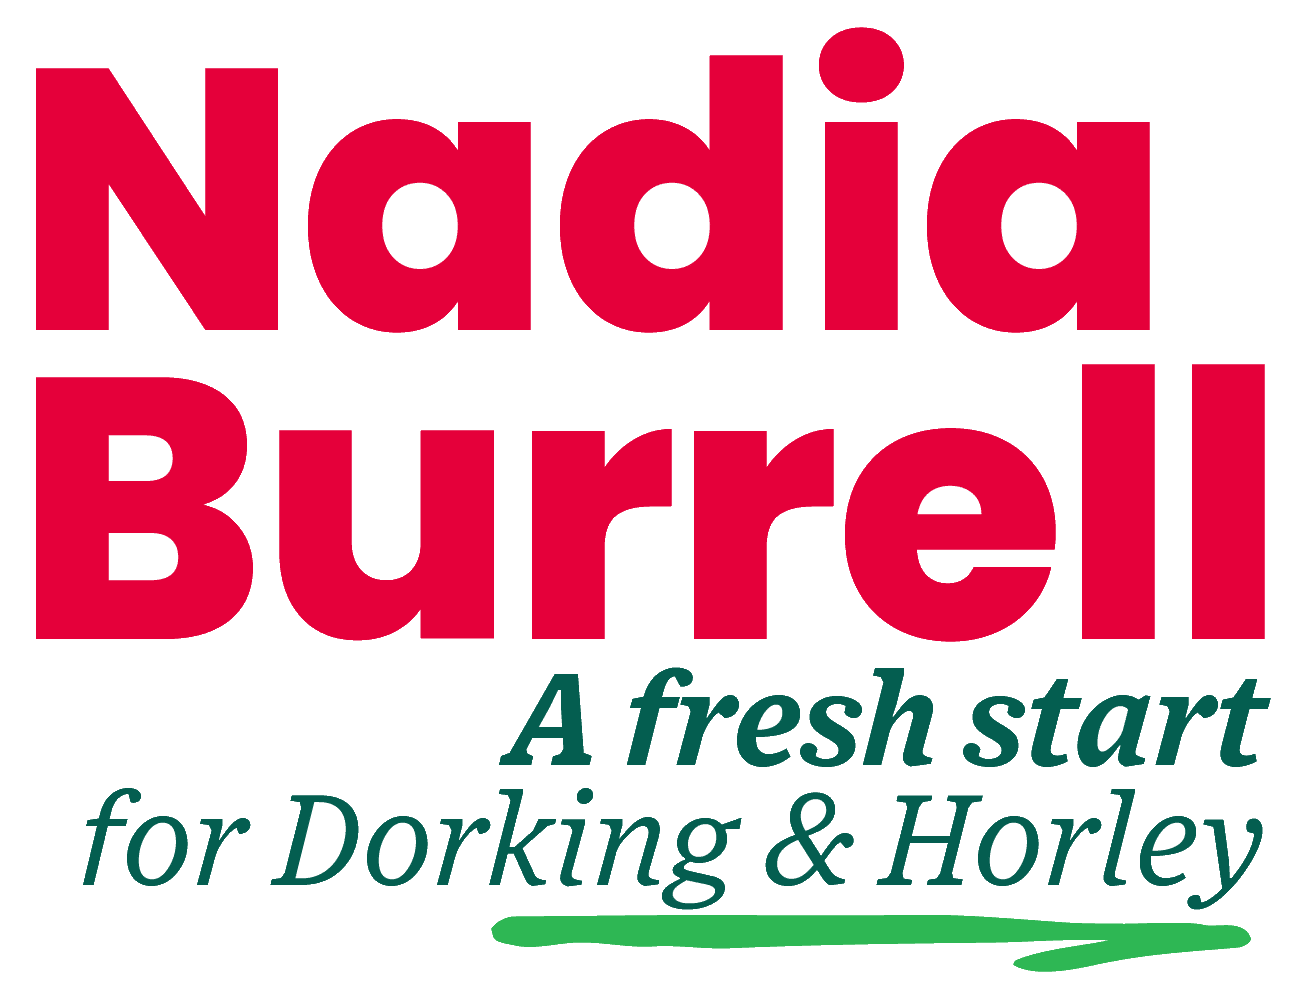 Nadia Burrell for Dorking & Horley